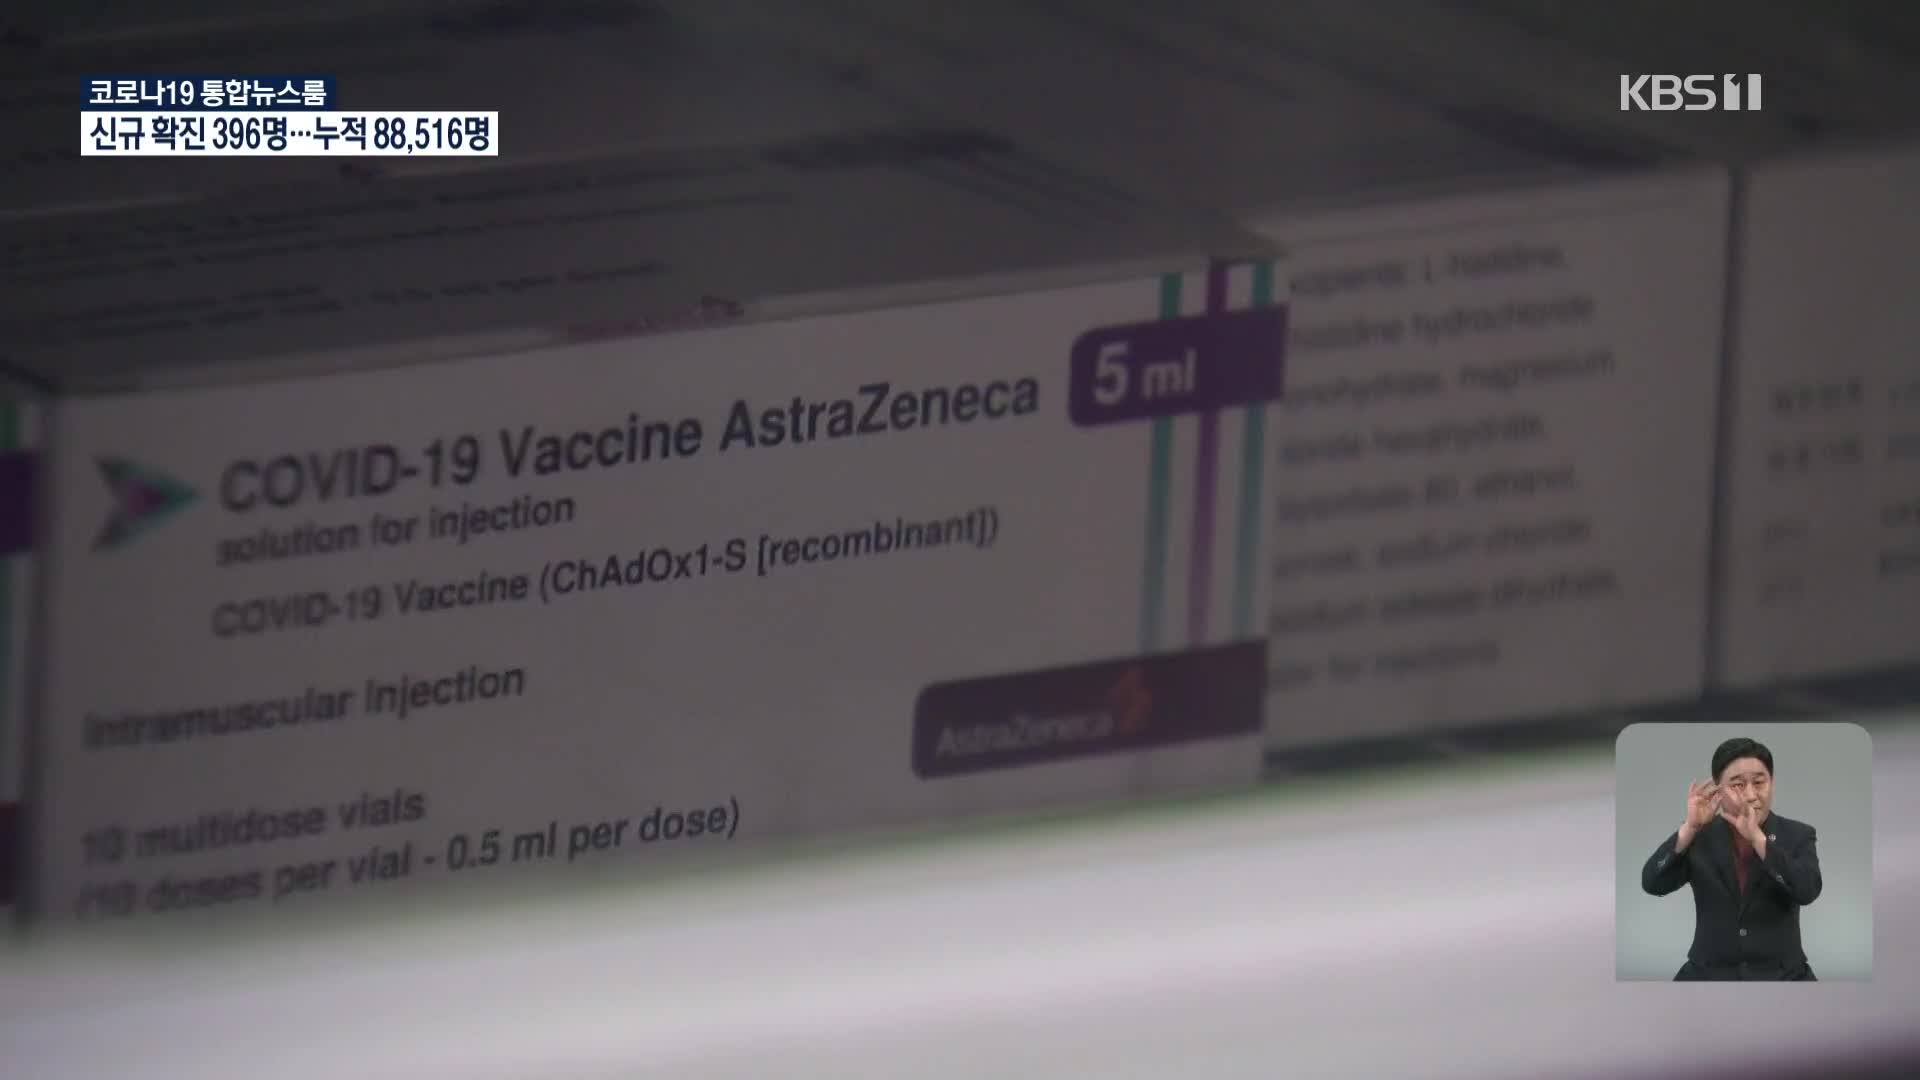 아스트라제네카 백신 제주 도착…내일부터 접종